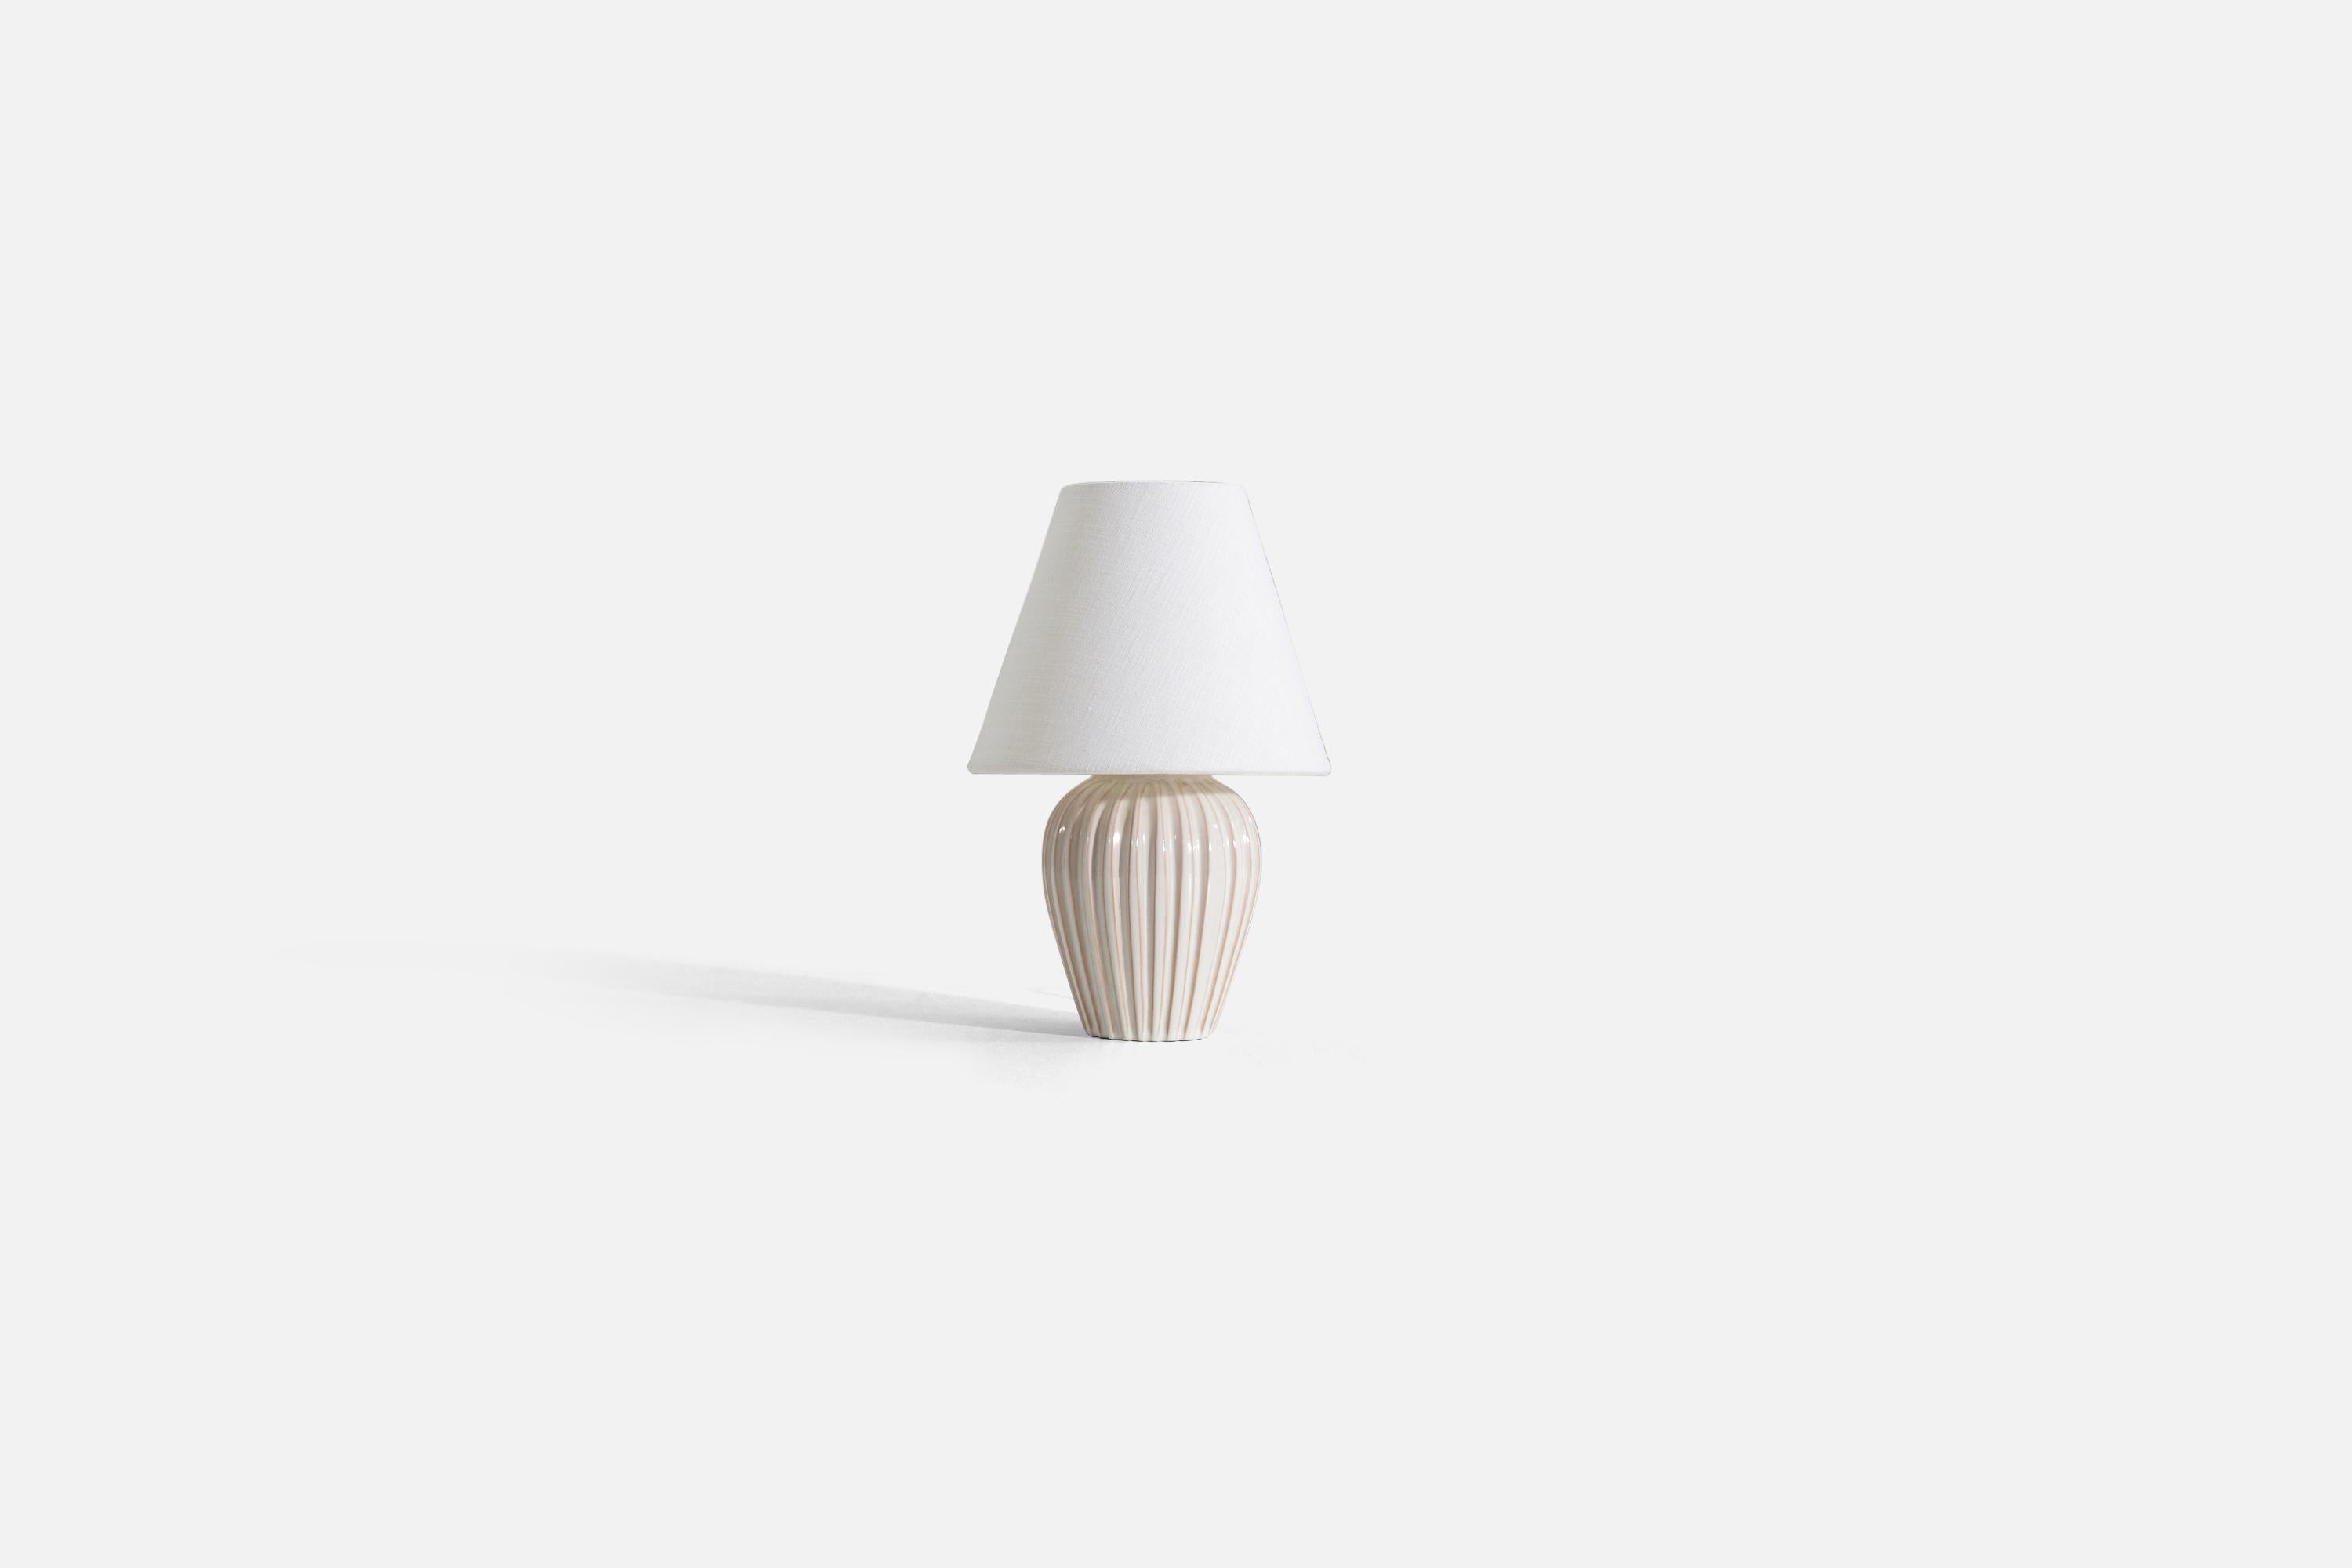 Lampe de table en grès émaillé blanc cassé produite par un designer danois, Danemark, années 1960

Vendu sans abat-jour. 

Les mesures indiquées sont celles de la lampe.
Abat-jour : 4 x 8 x 6,5
Lampe avec abat-jour : 12 x 8 x 8.